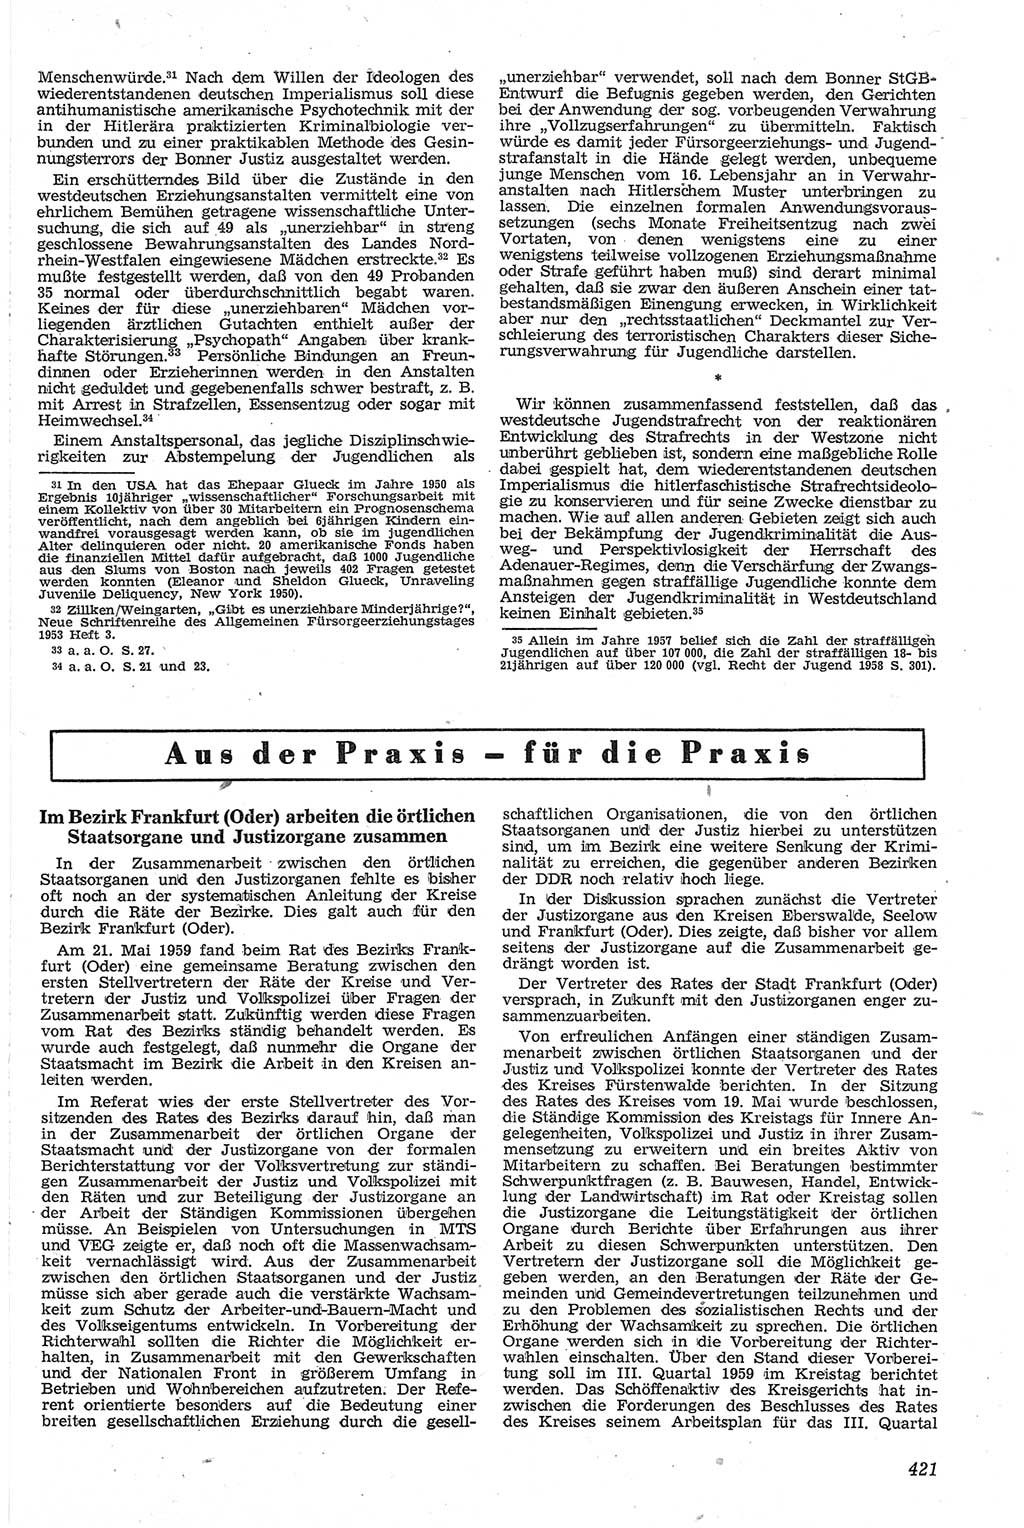 Neue Justiz (NJ), Zeitschrift für Recht und Rechtswissenschaft [Deutsche Demokratische Republik (DDR)], 13. Jahrgang 1959, Seite 421 (NJ DDR 1959, S. 421)